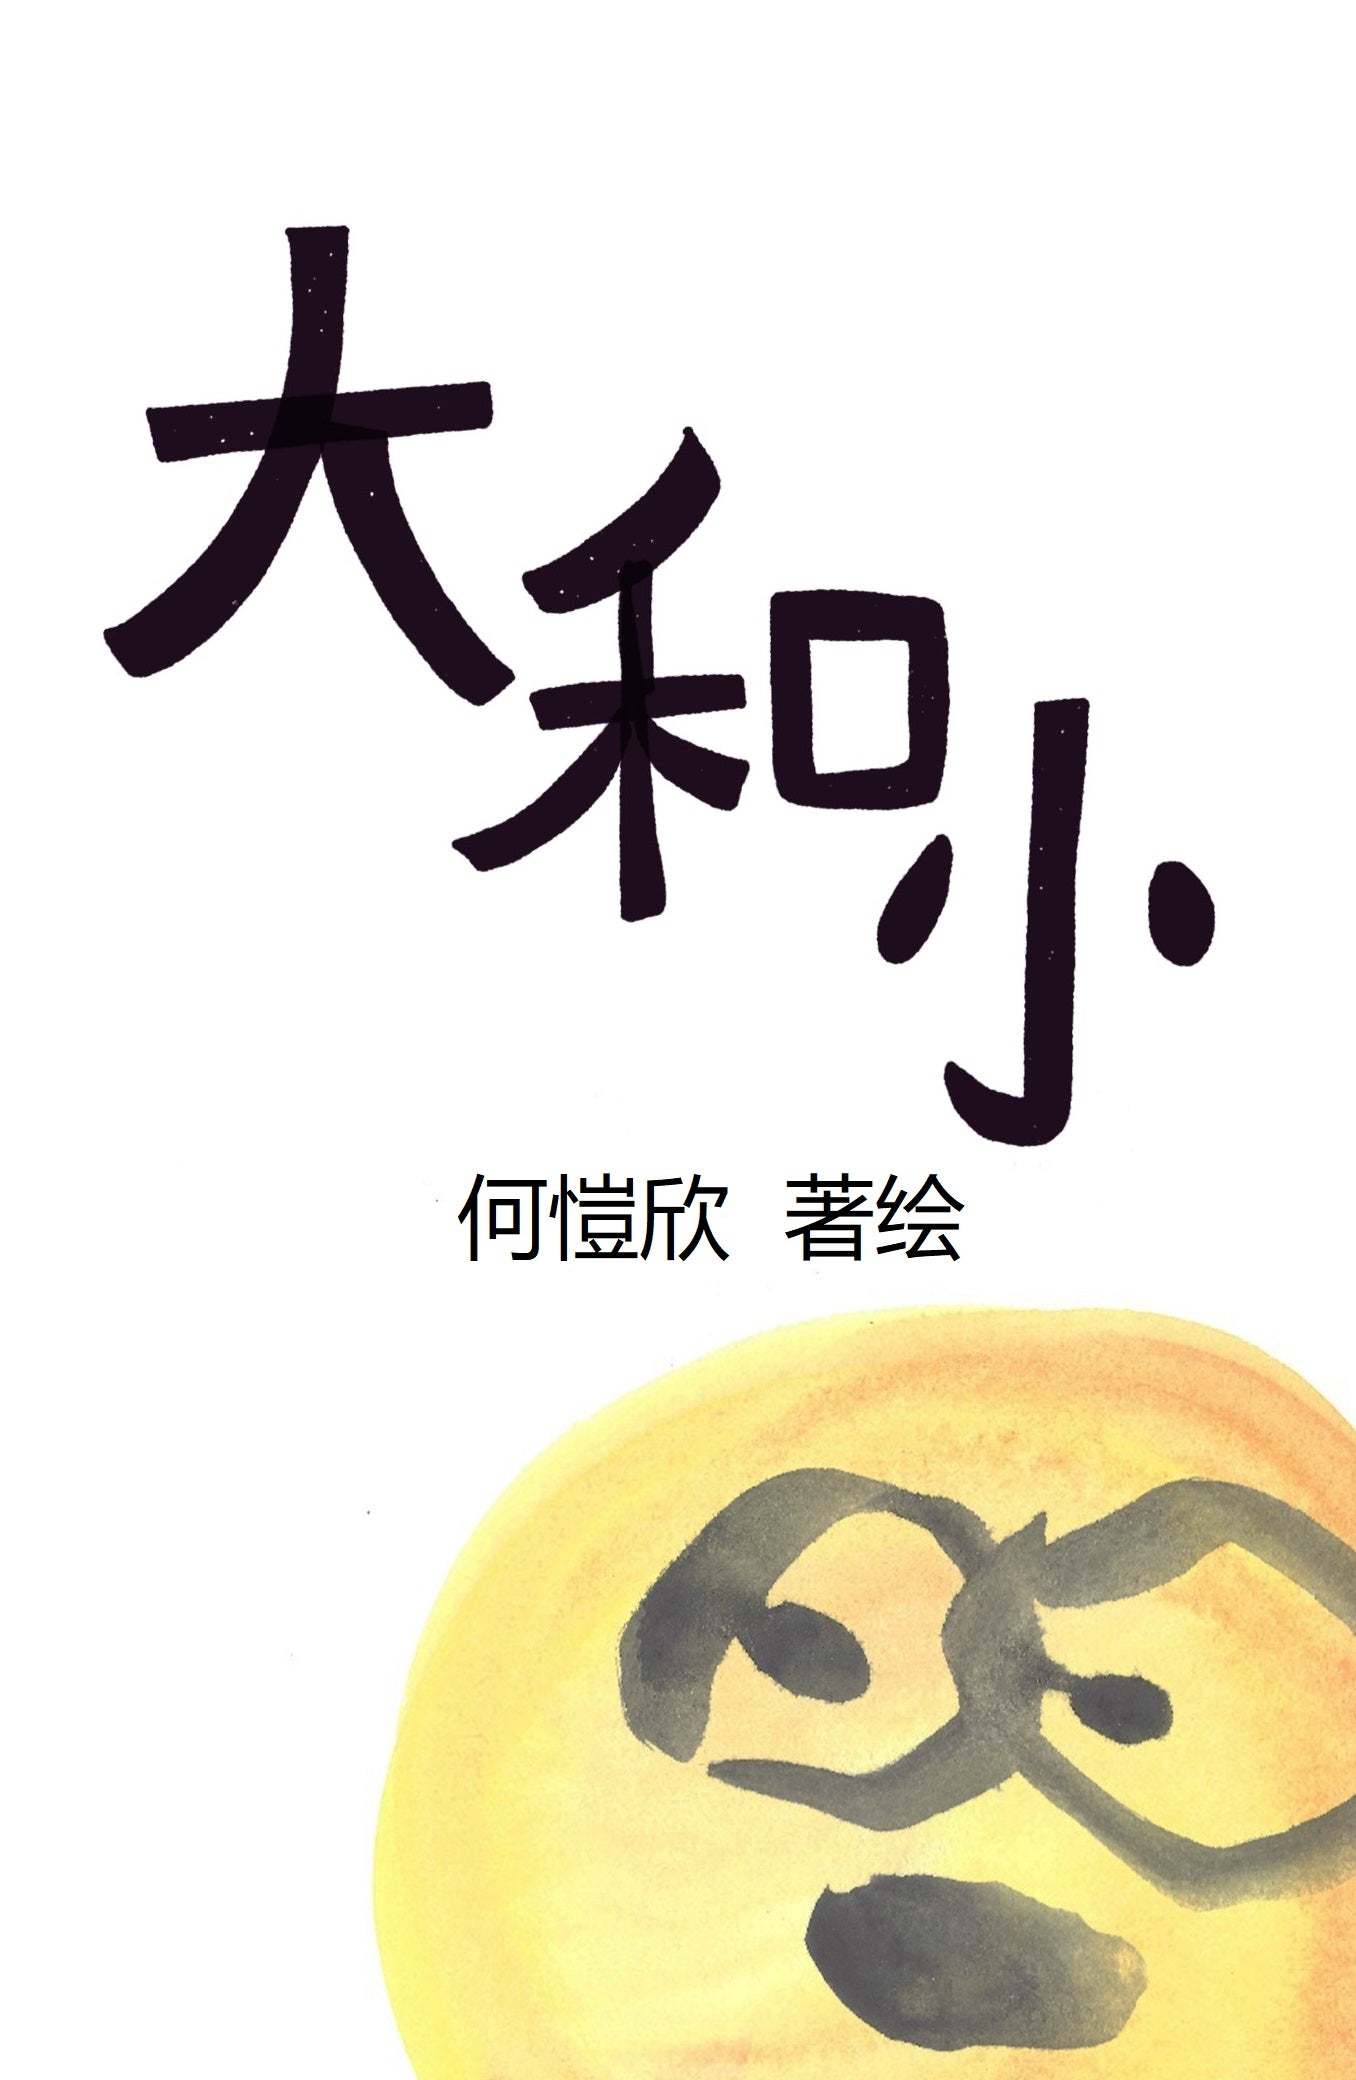 大和小 - PDF Picture book by Kacey Ho